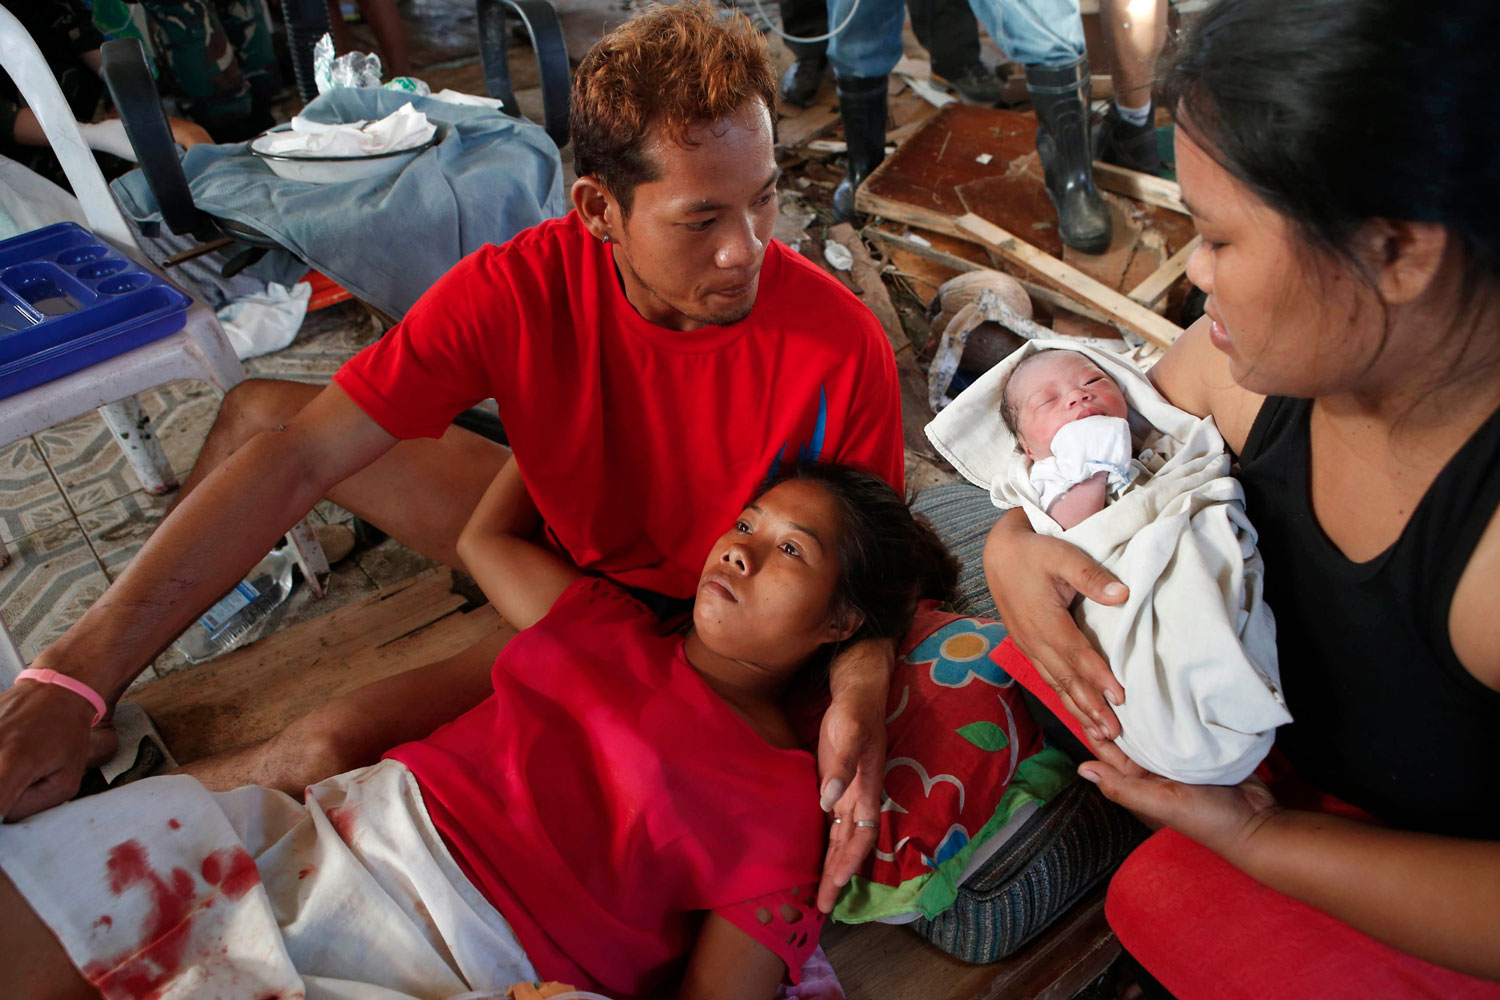 La historia del bebé milagro de Tacloban conmueve al mundo